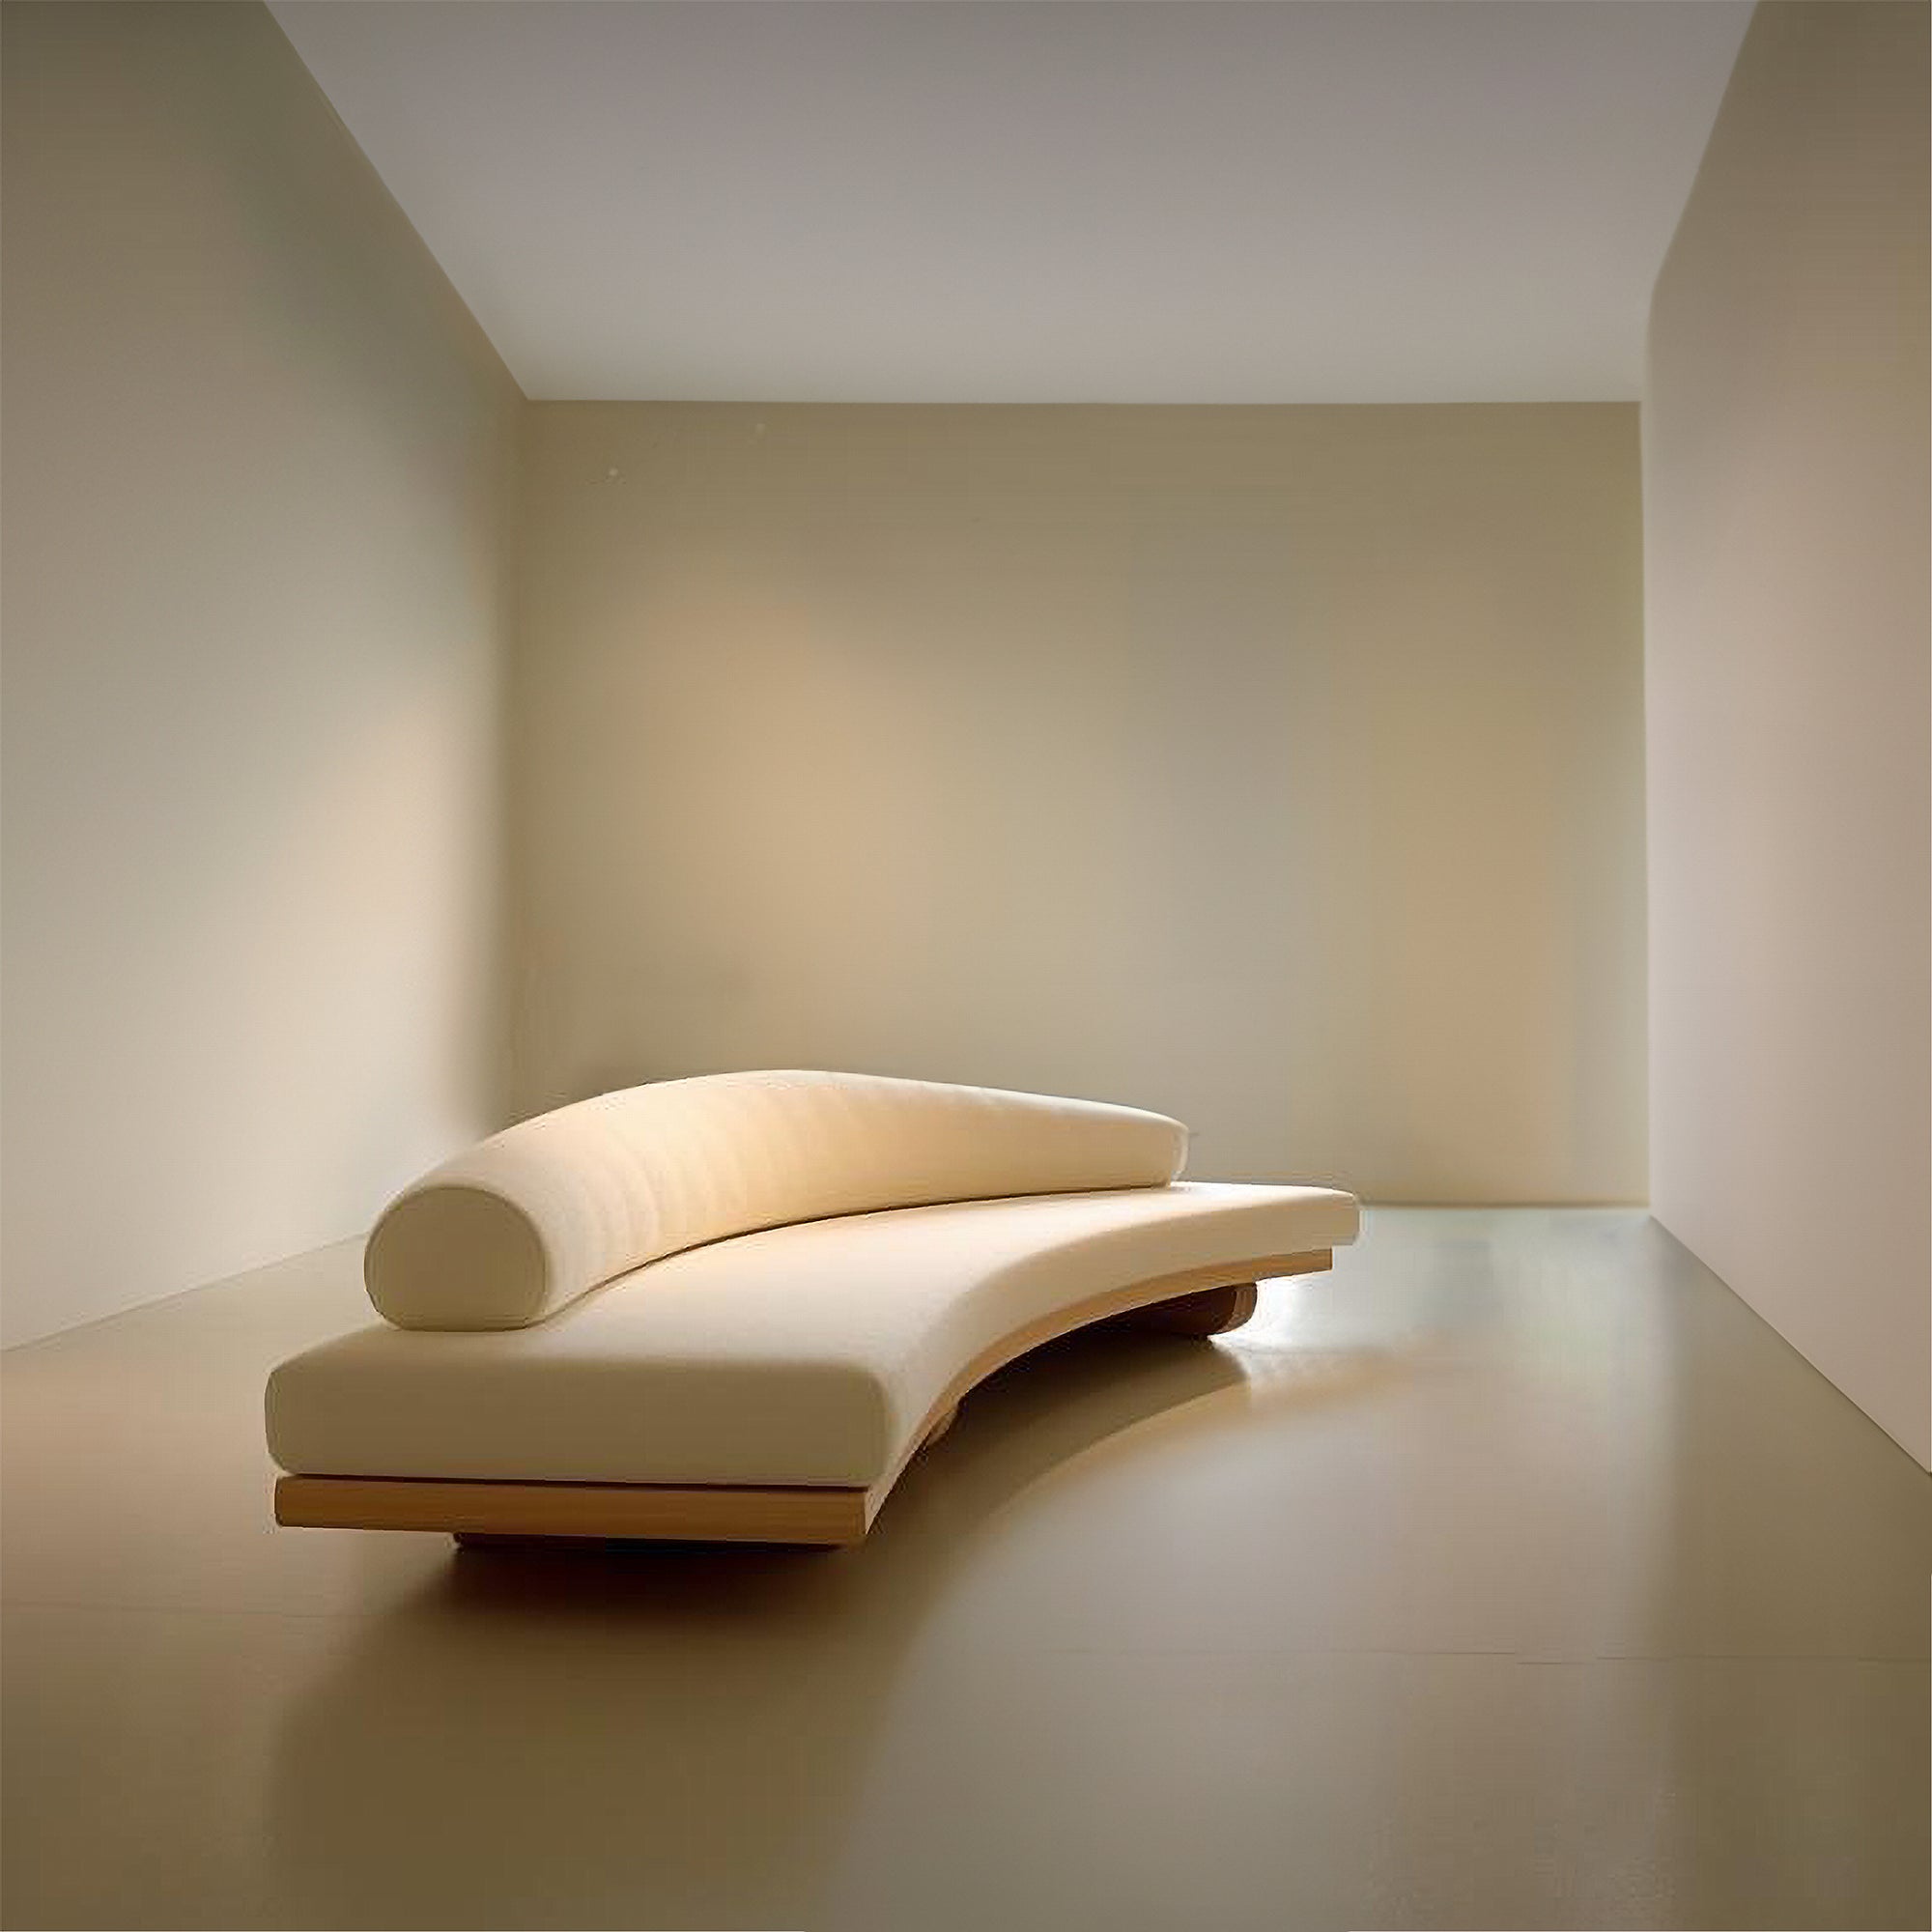 Morphogen customizable sofa